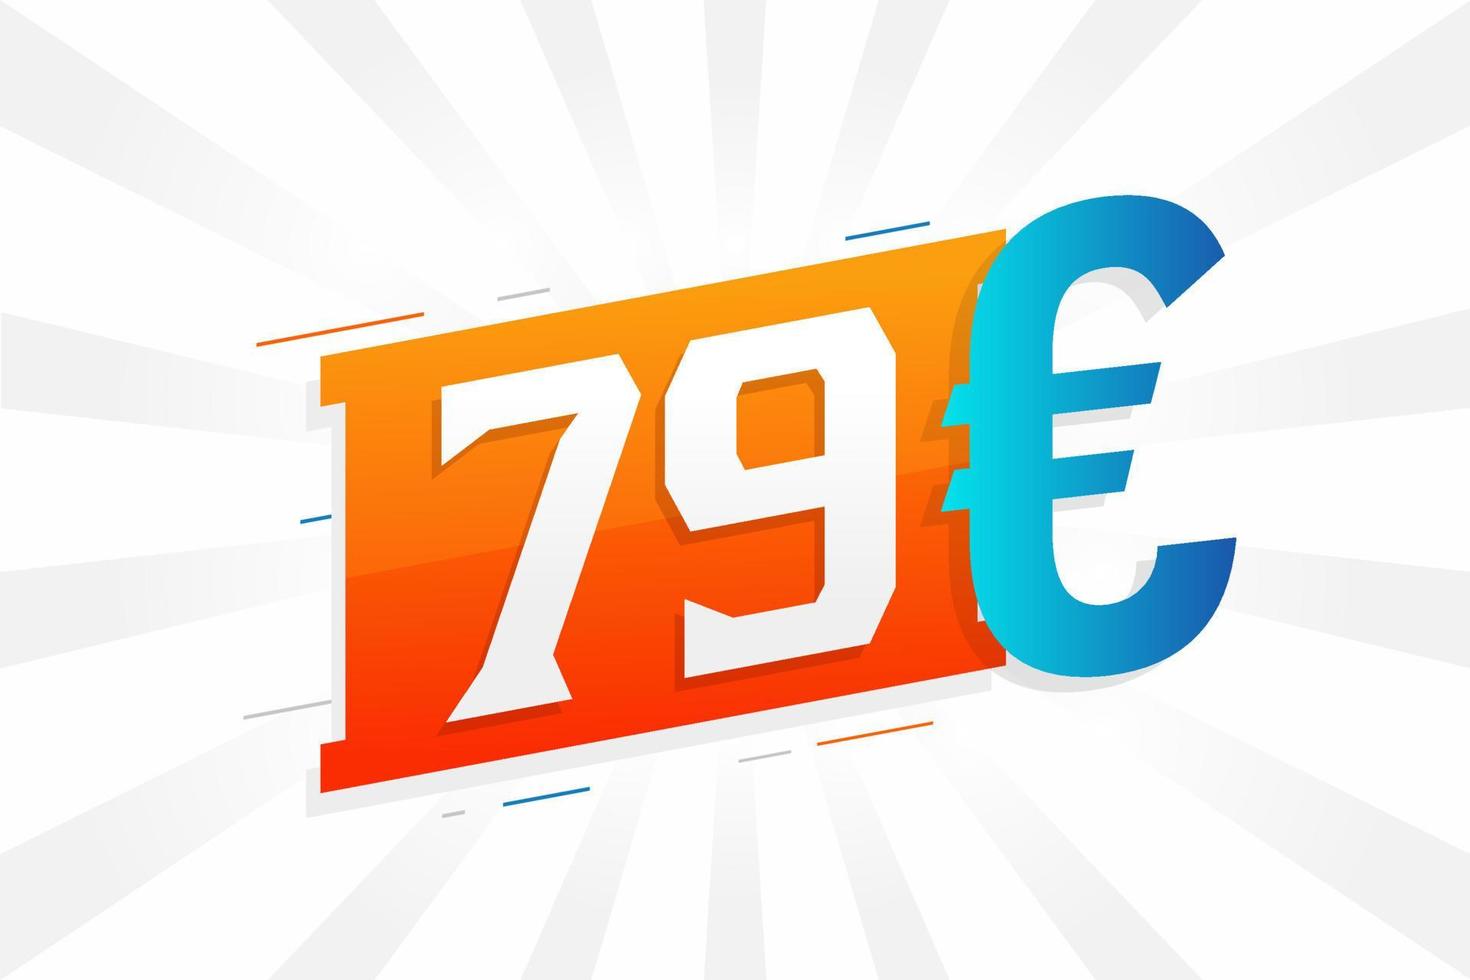 79-Euro-Währungsvektor-Textsymbol. 79 euro geldstockvektor der europäischen union vektor